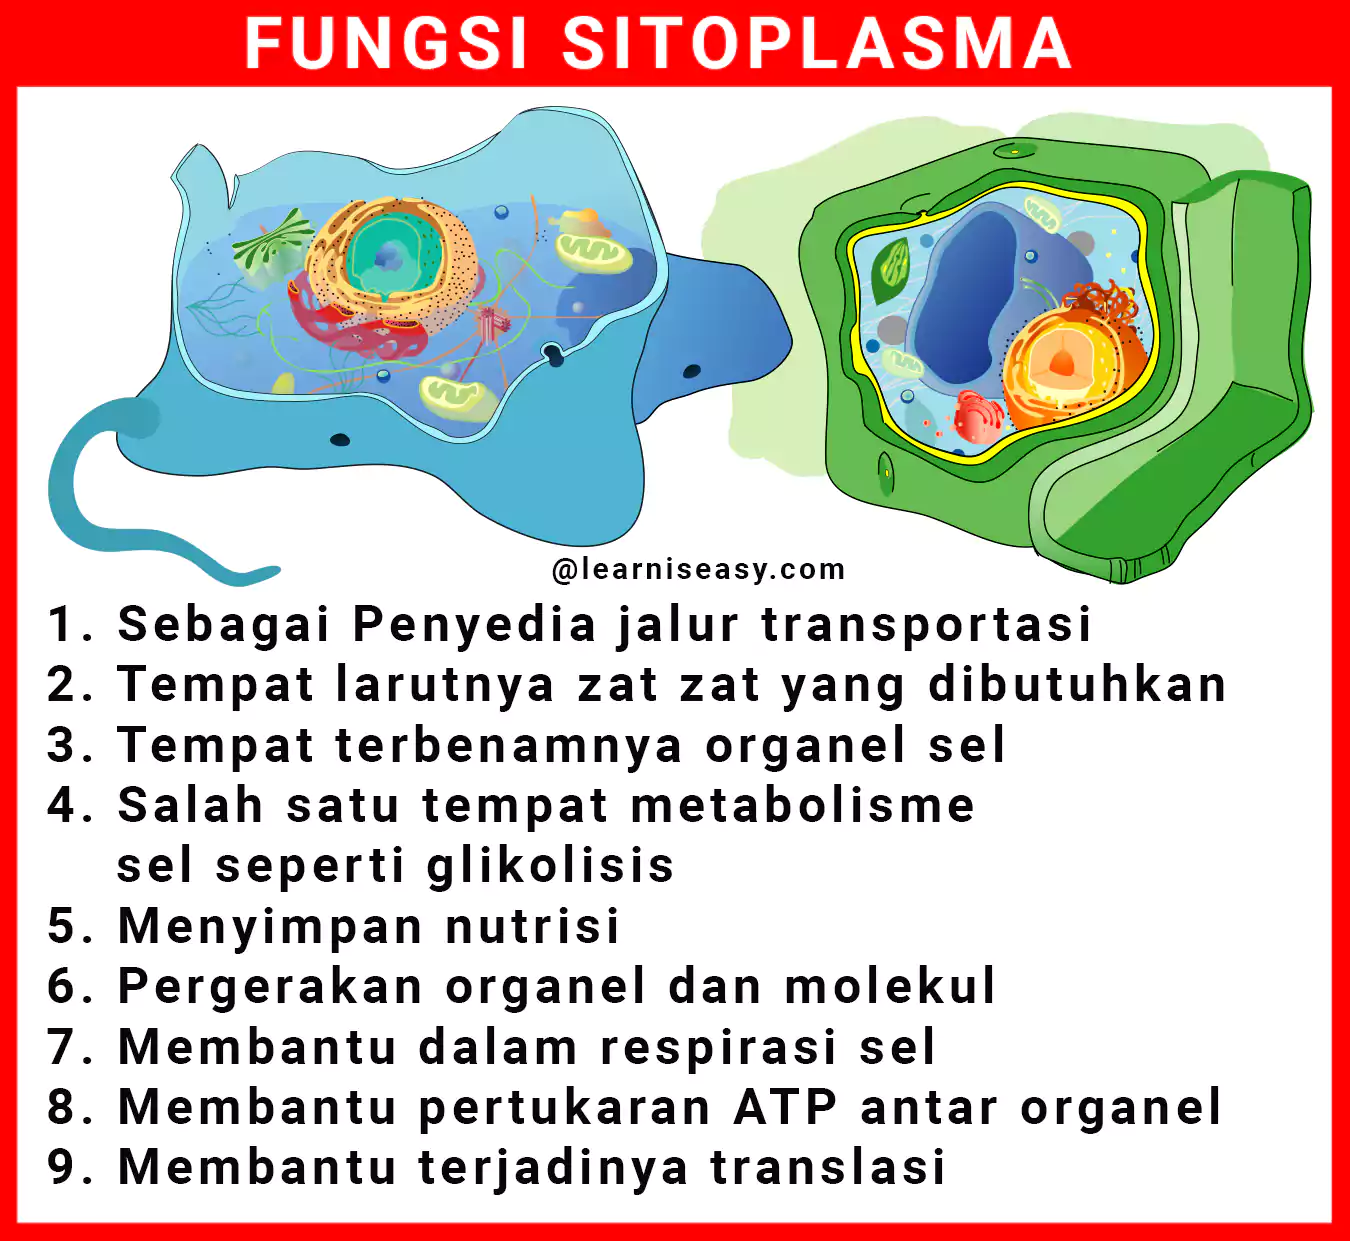 Fungsi sitoplasma pada sel hewan dan sel tumbuhan